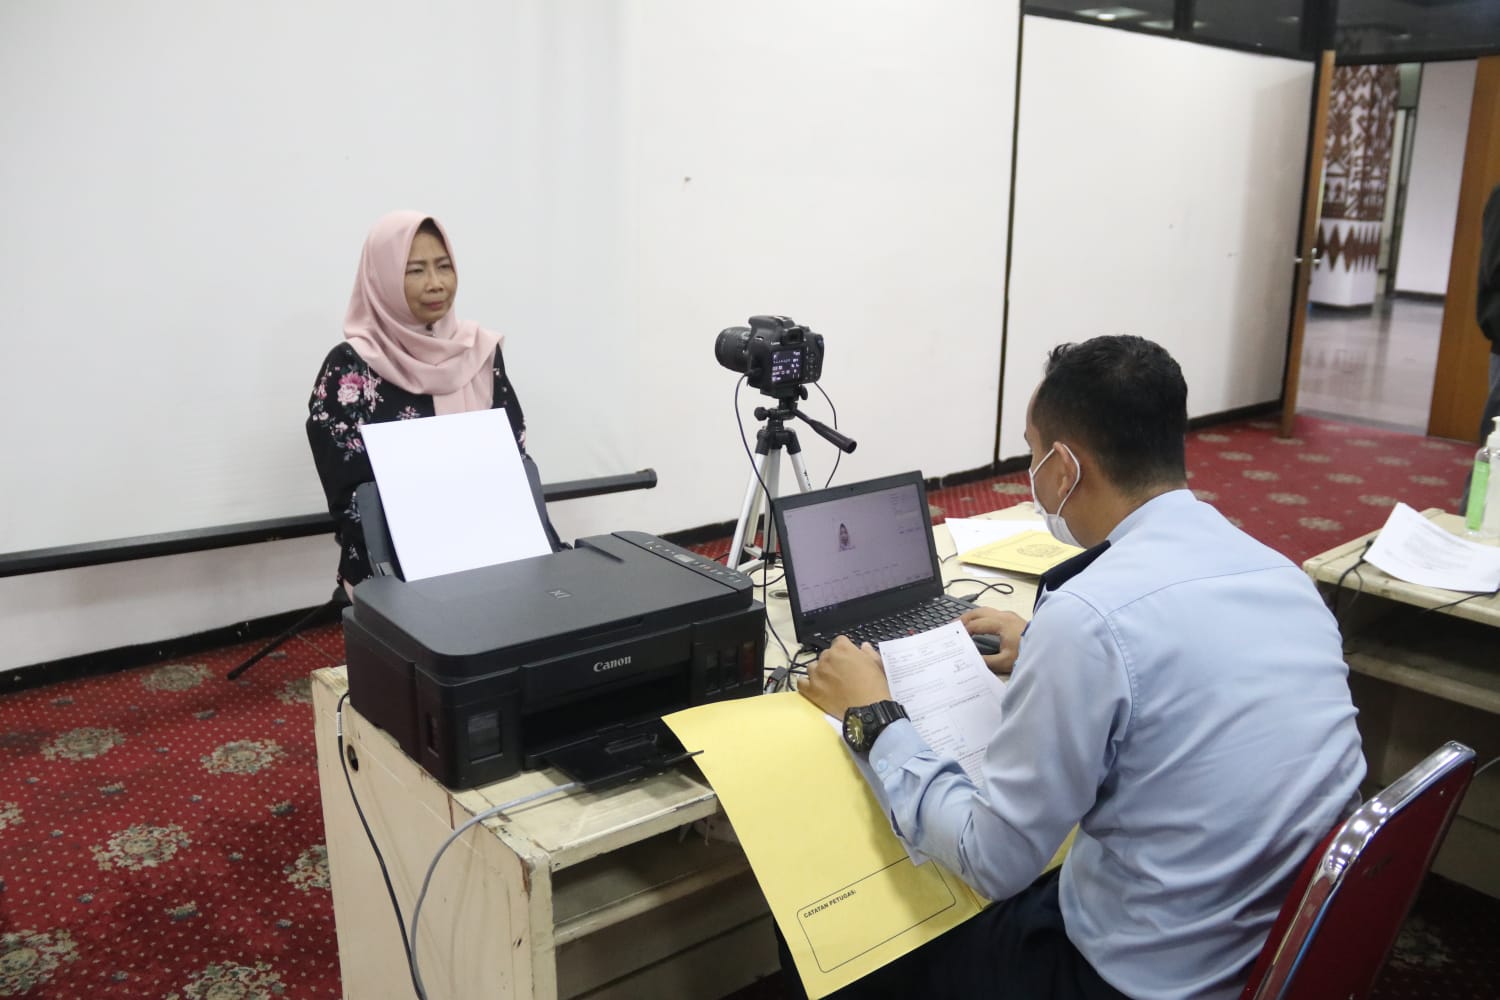 Dalam Rangka Peringatan HUT Korpri Ke-51, Pengurus Korpri Provinsi Lampung Gelar Kegiatan Pembuatan Paspor Bagi ASN